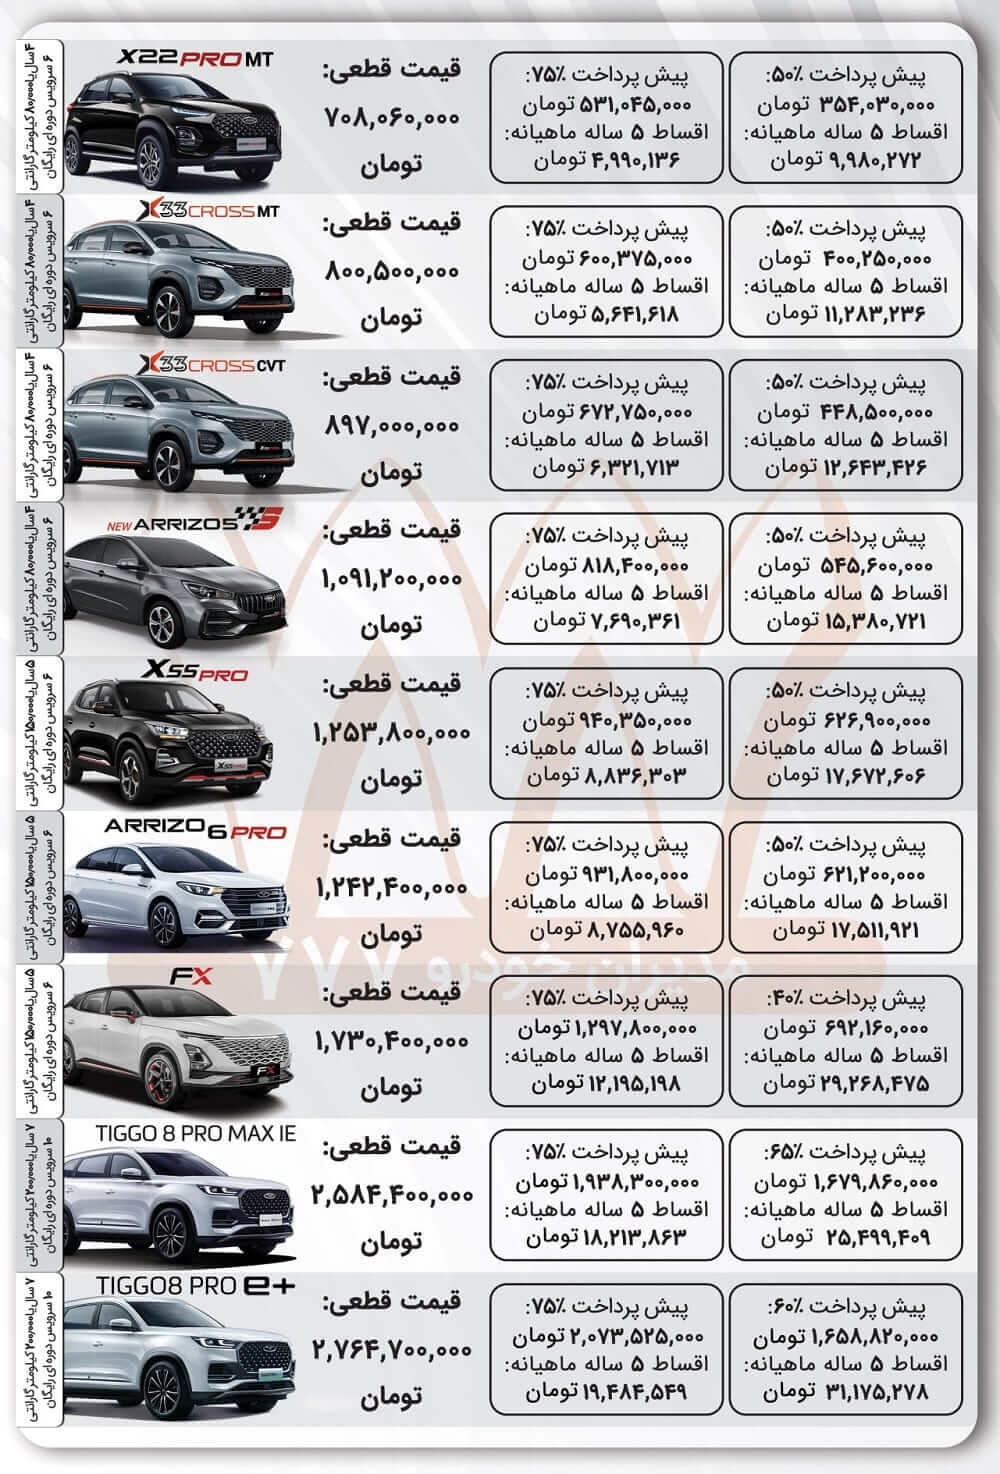 فروش اقساطی مدیران خودرو با تیگو 8، آریزو 5، X55 پرو با اقساط 5 ساله ویژه دی ماه 1402